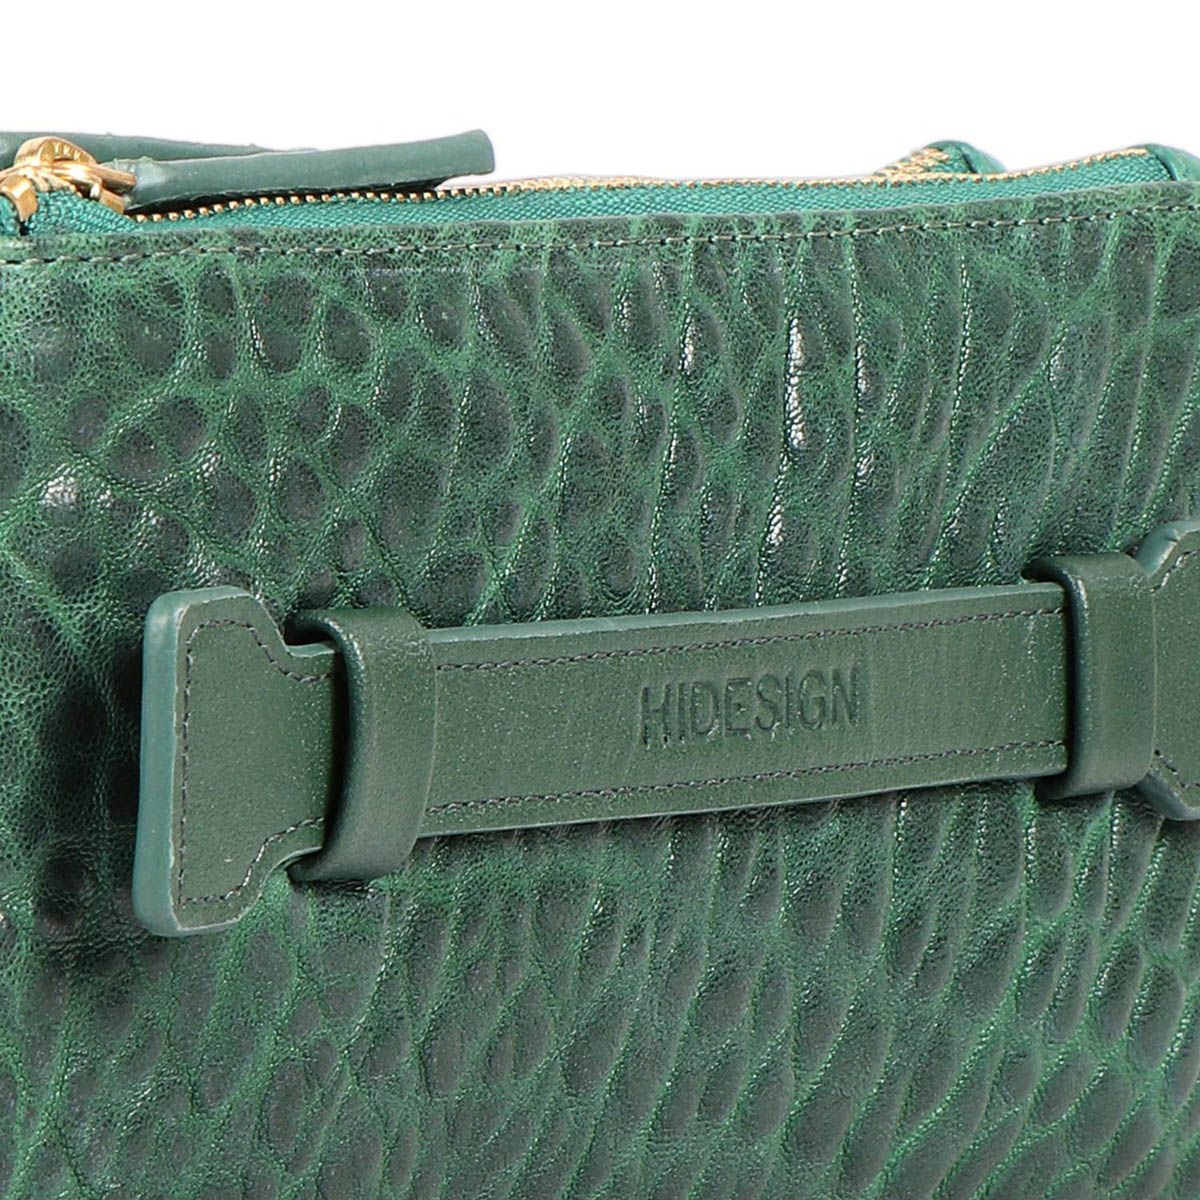 Hidesign Leather Crossbody Crossbody Bags | Mercari